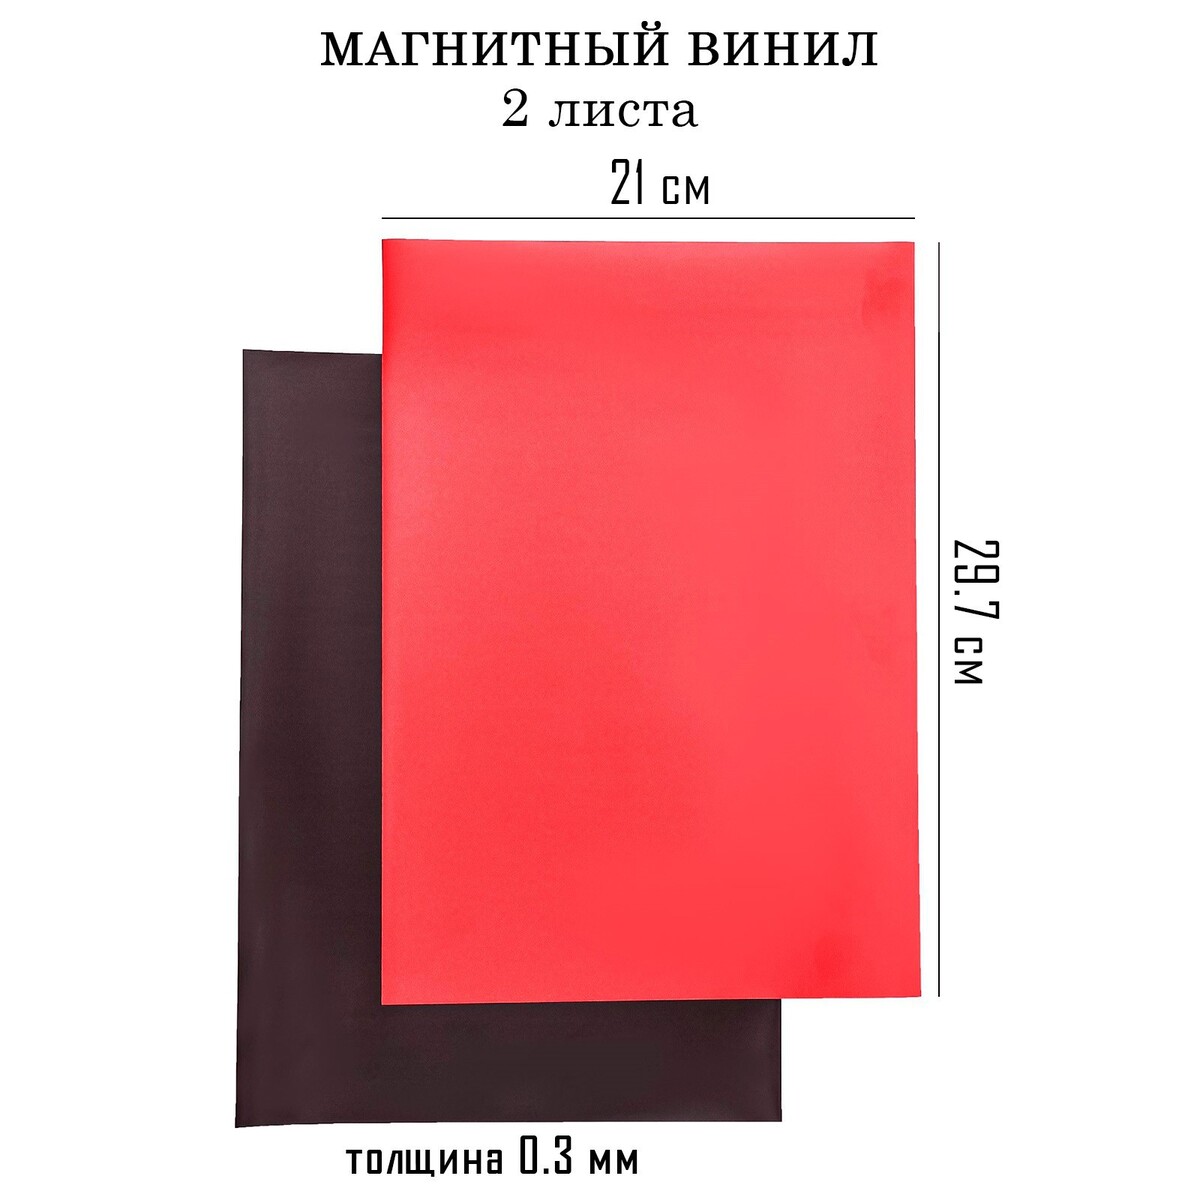 Магнитный винил, с пвх поверхностью, а4, 2 шт, толщина 0.3 мм, 21 х 29.7 см, красный аппликатор массажер медицинский тибетский магнитный на мягкой подложке 17х28 см красный